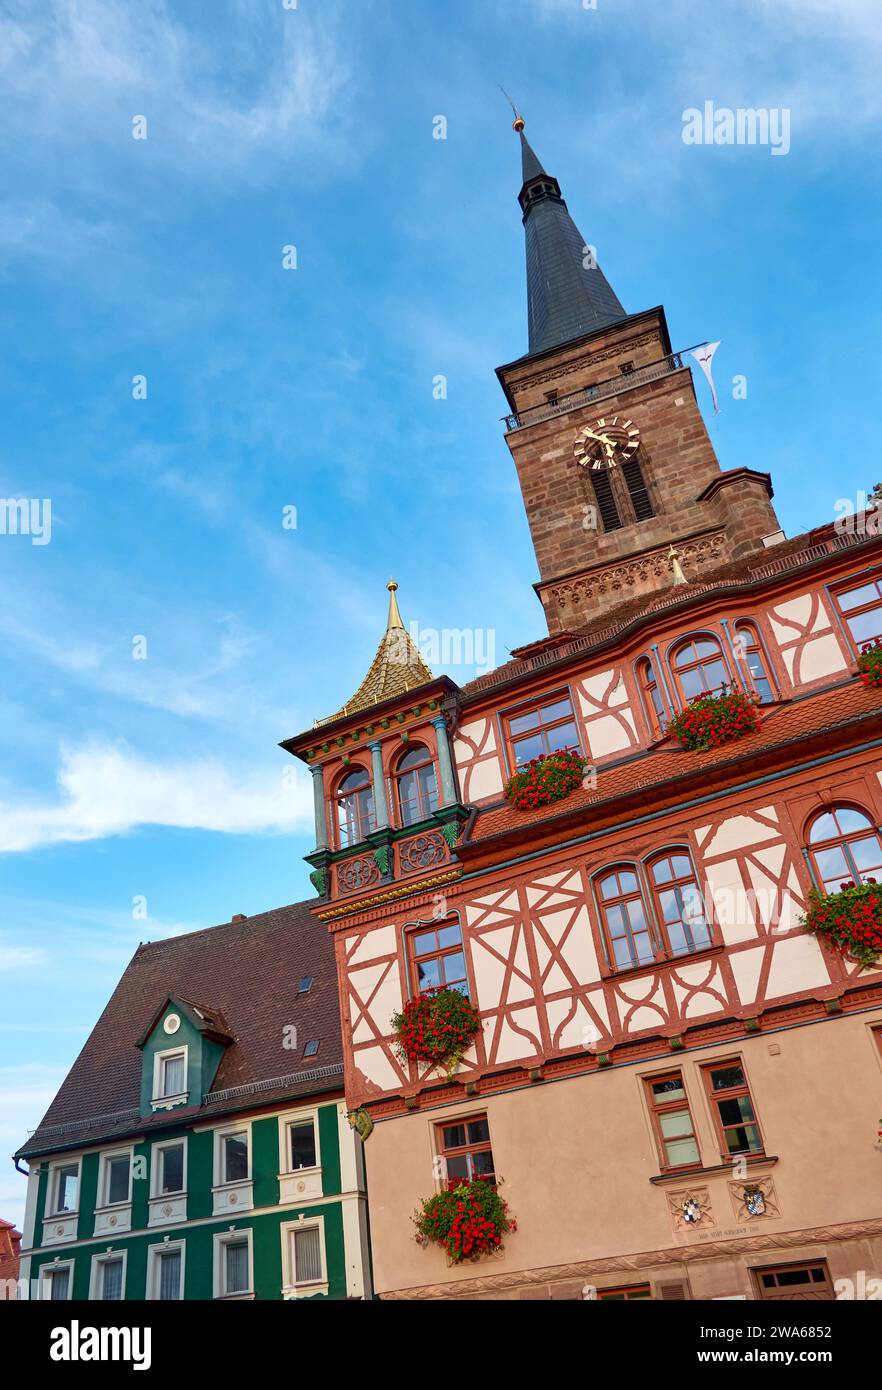 Storico municipio con tetto dorato sulla torre angolare, città di Schwabach, Germania Foto Stock